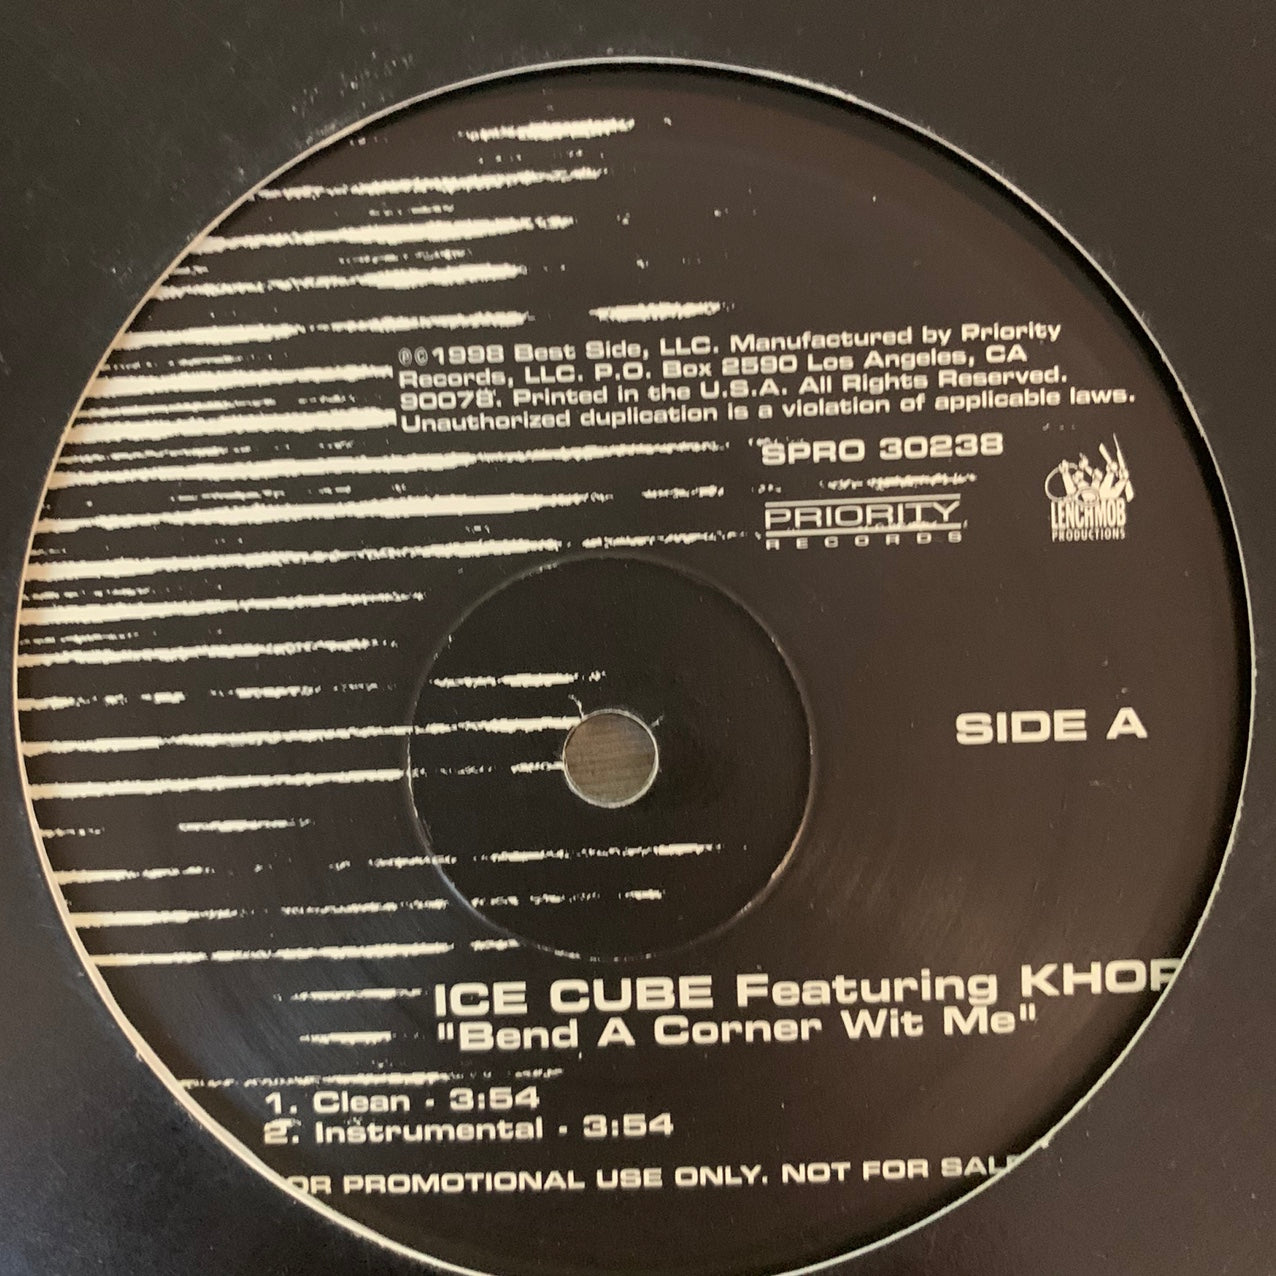 Ice Cube Feat Khop “Bend A Corner Wit Me” 4 Version 12inch Vinyl